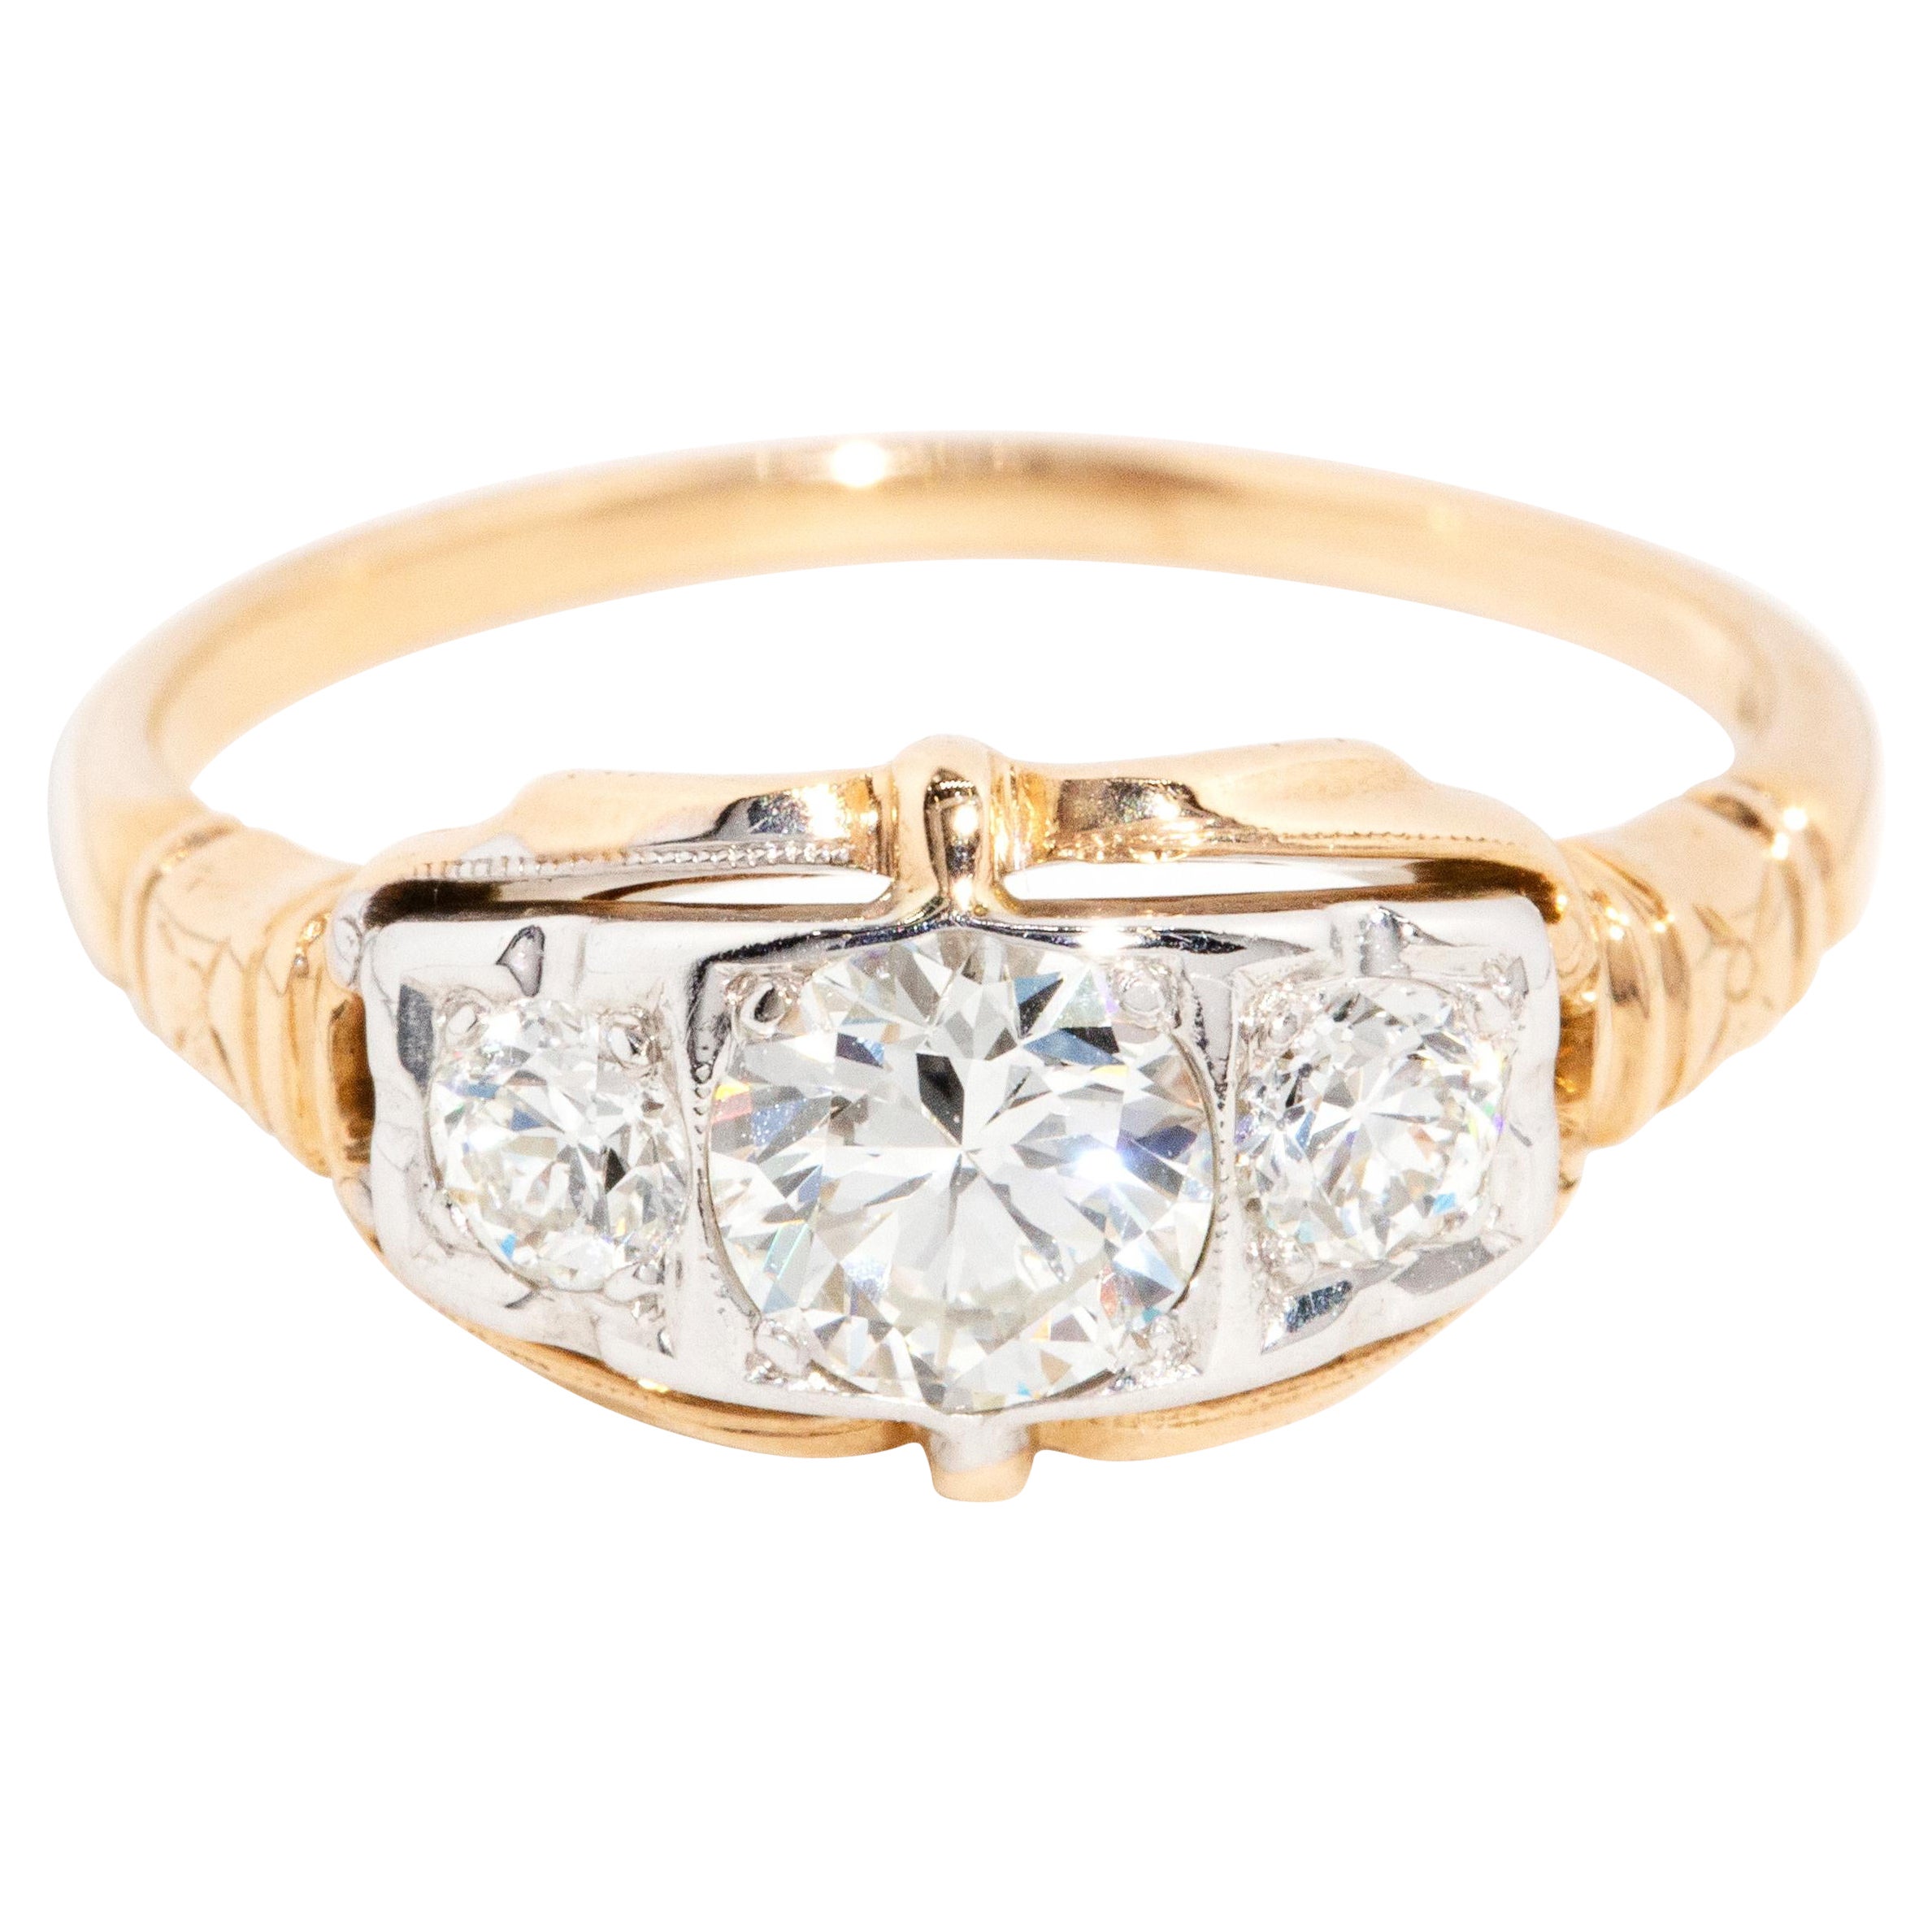 Vintage Circa 1950s Three Stone Diamond Ring 14 Carat Yellow & White Gold